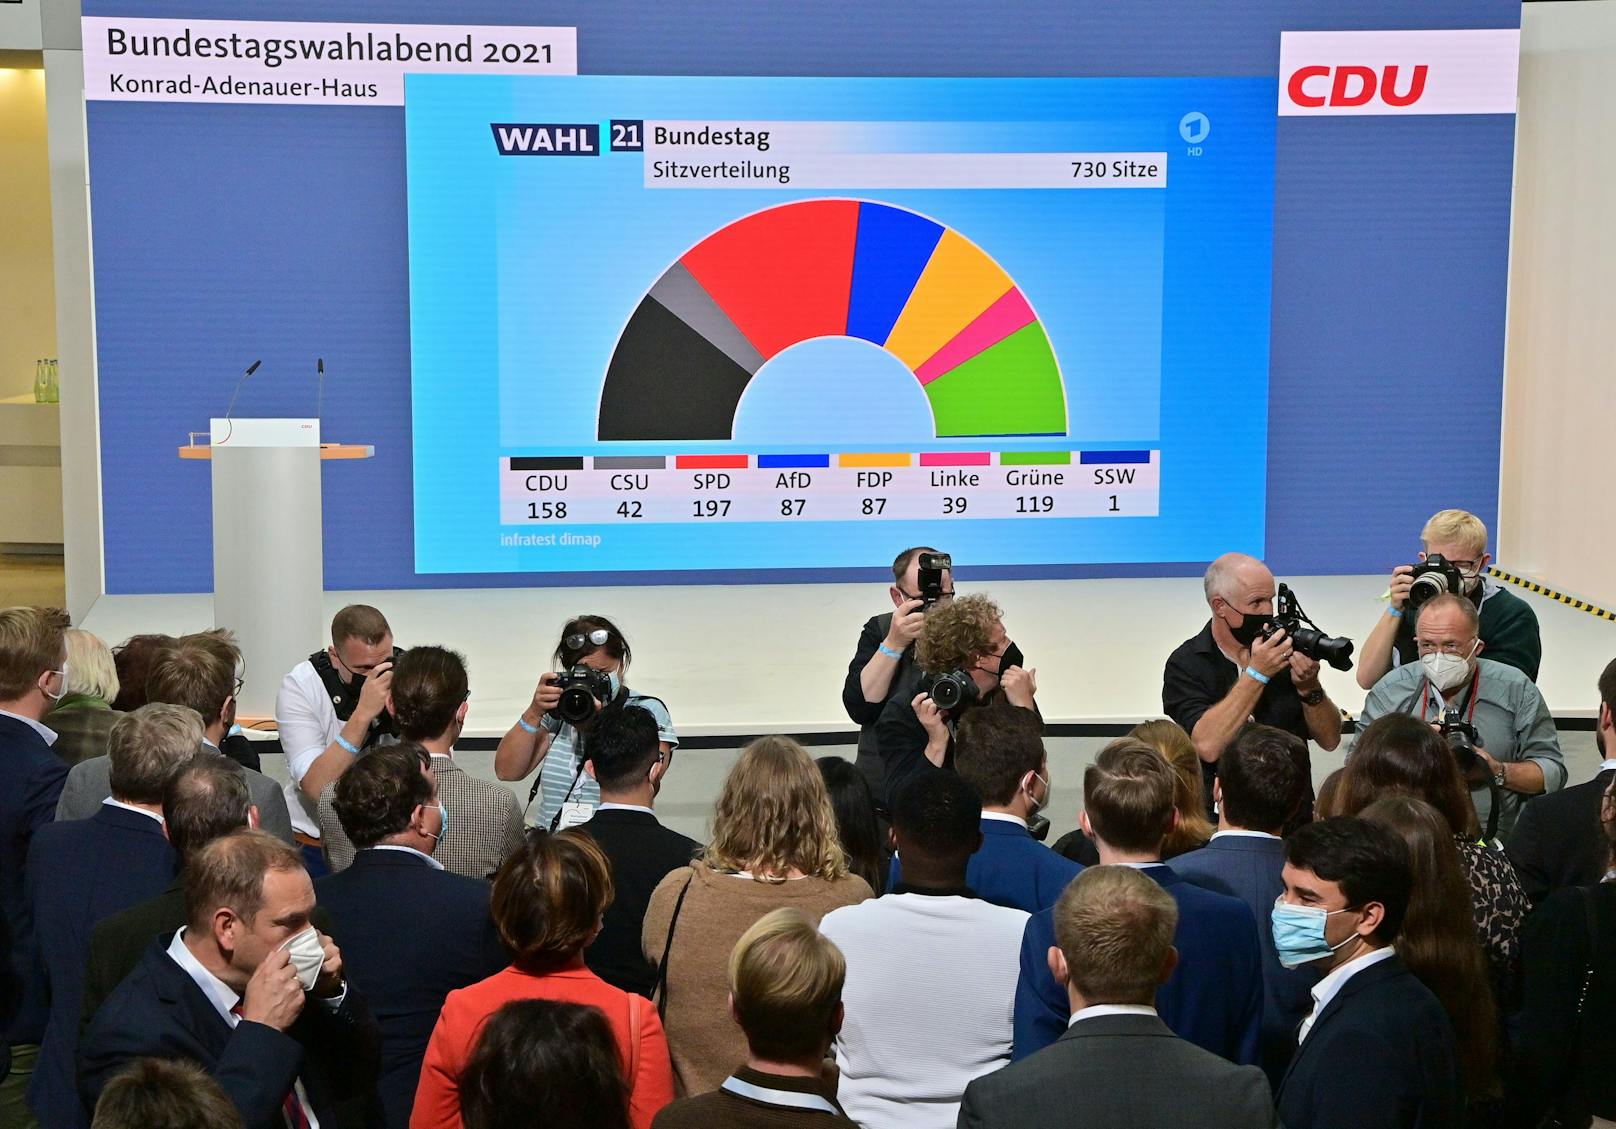 Knapper geht's nicht mehr: Ein spannendes Kopf-an-Kopf Rennen zwischen CDU und SPD